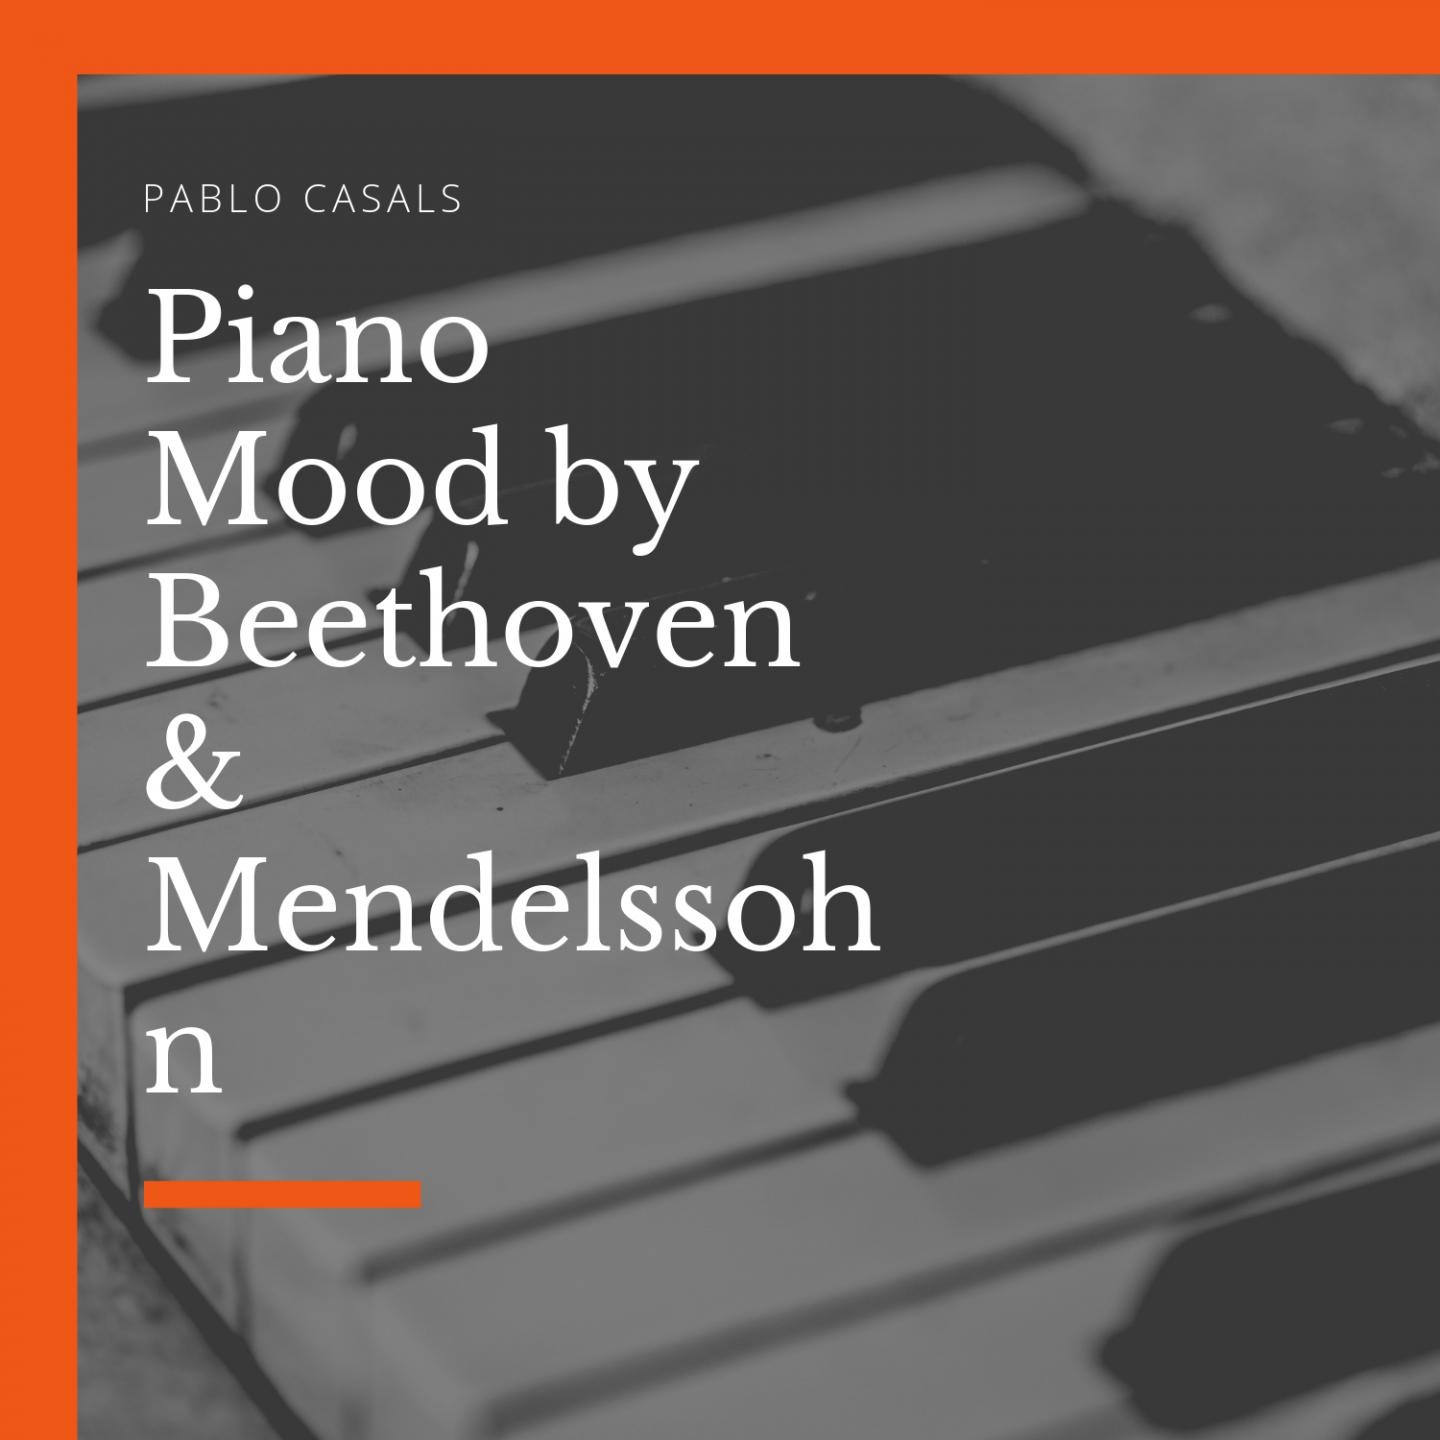 Piano Trio No. 1, in D Minor, Op. 49 : I. Molto allegro ed agitato